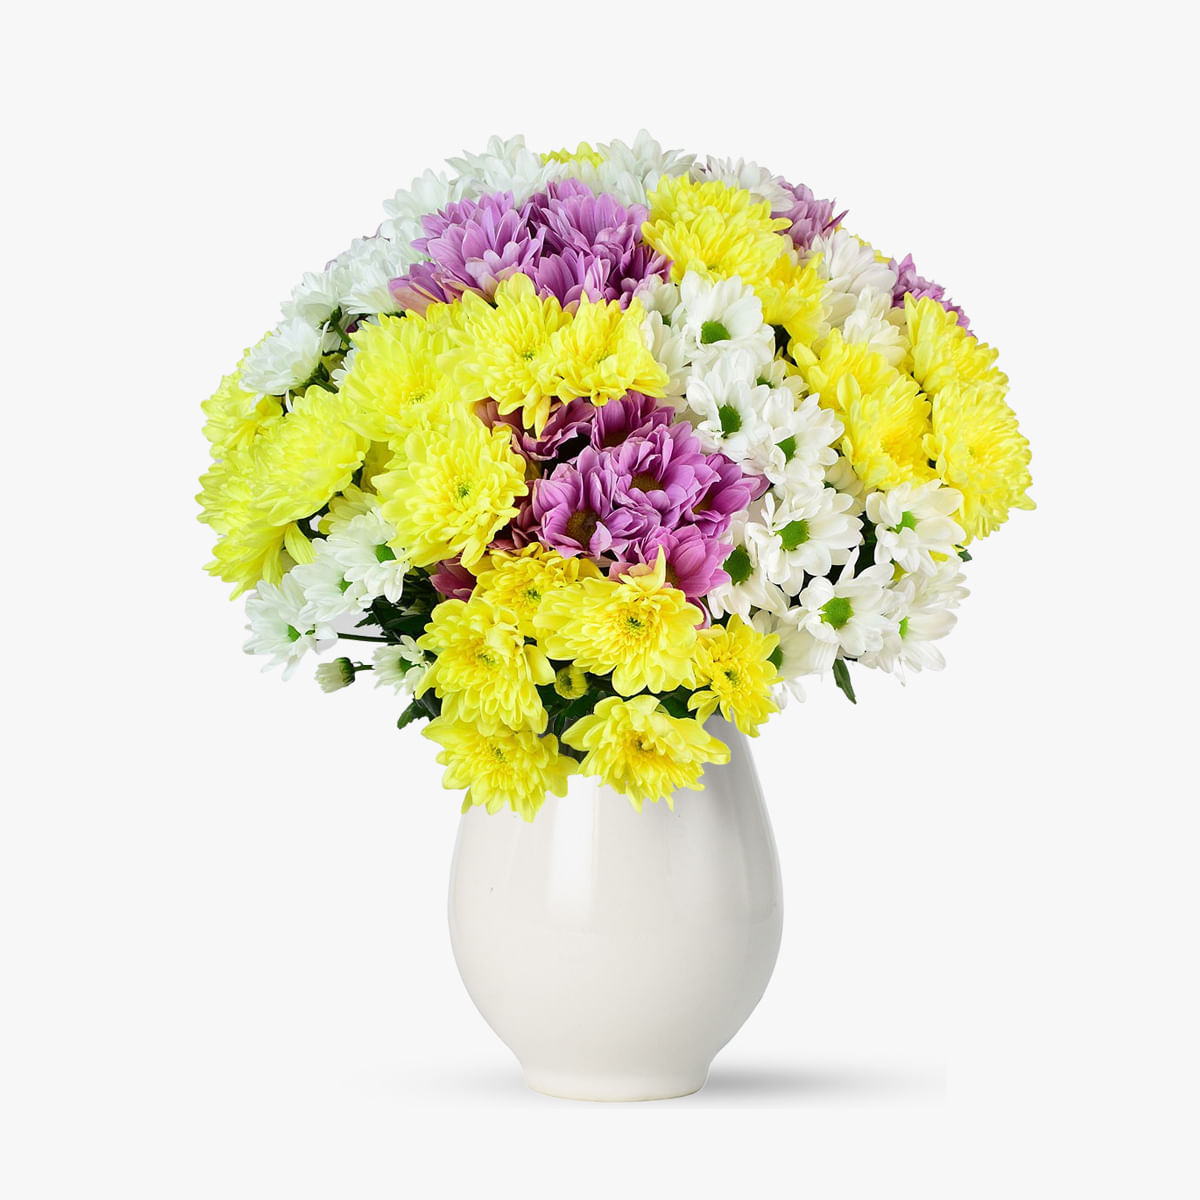 Buchet de 25 crizanteme multicolore – Standard Buchet imagine 2022